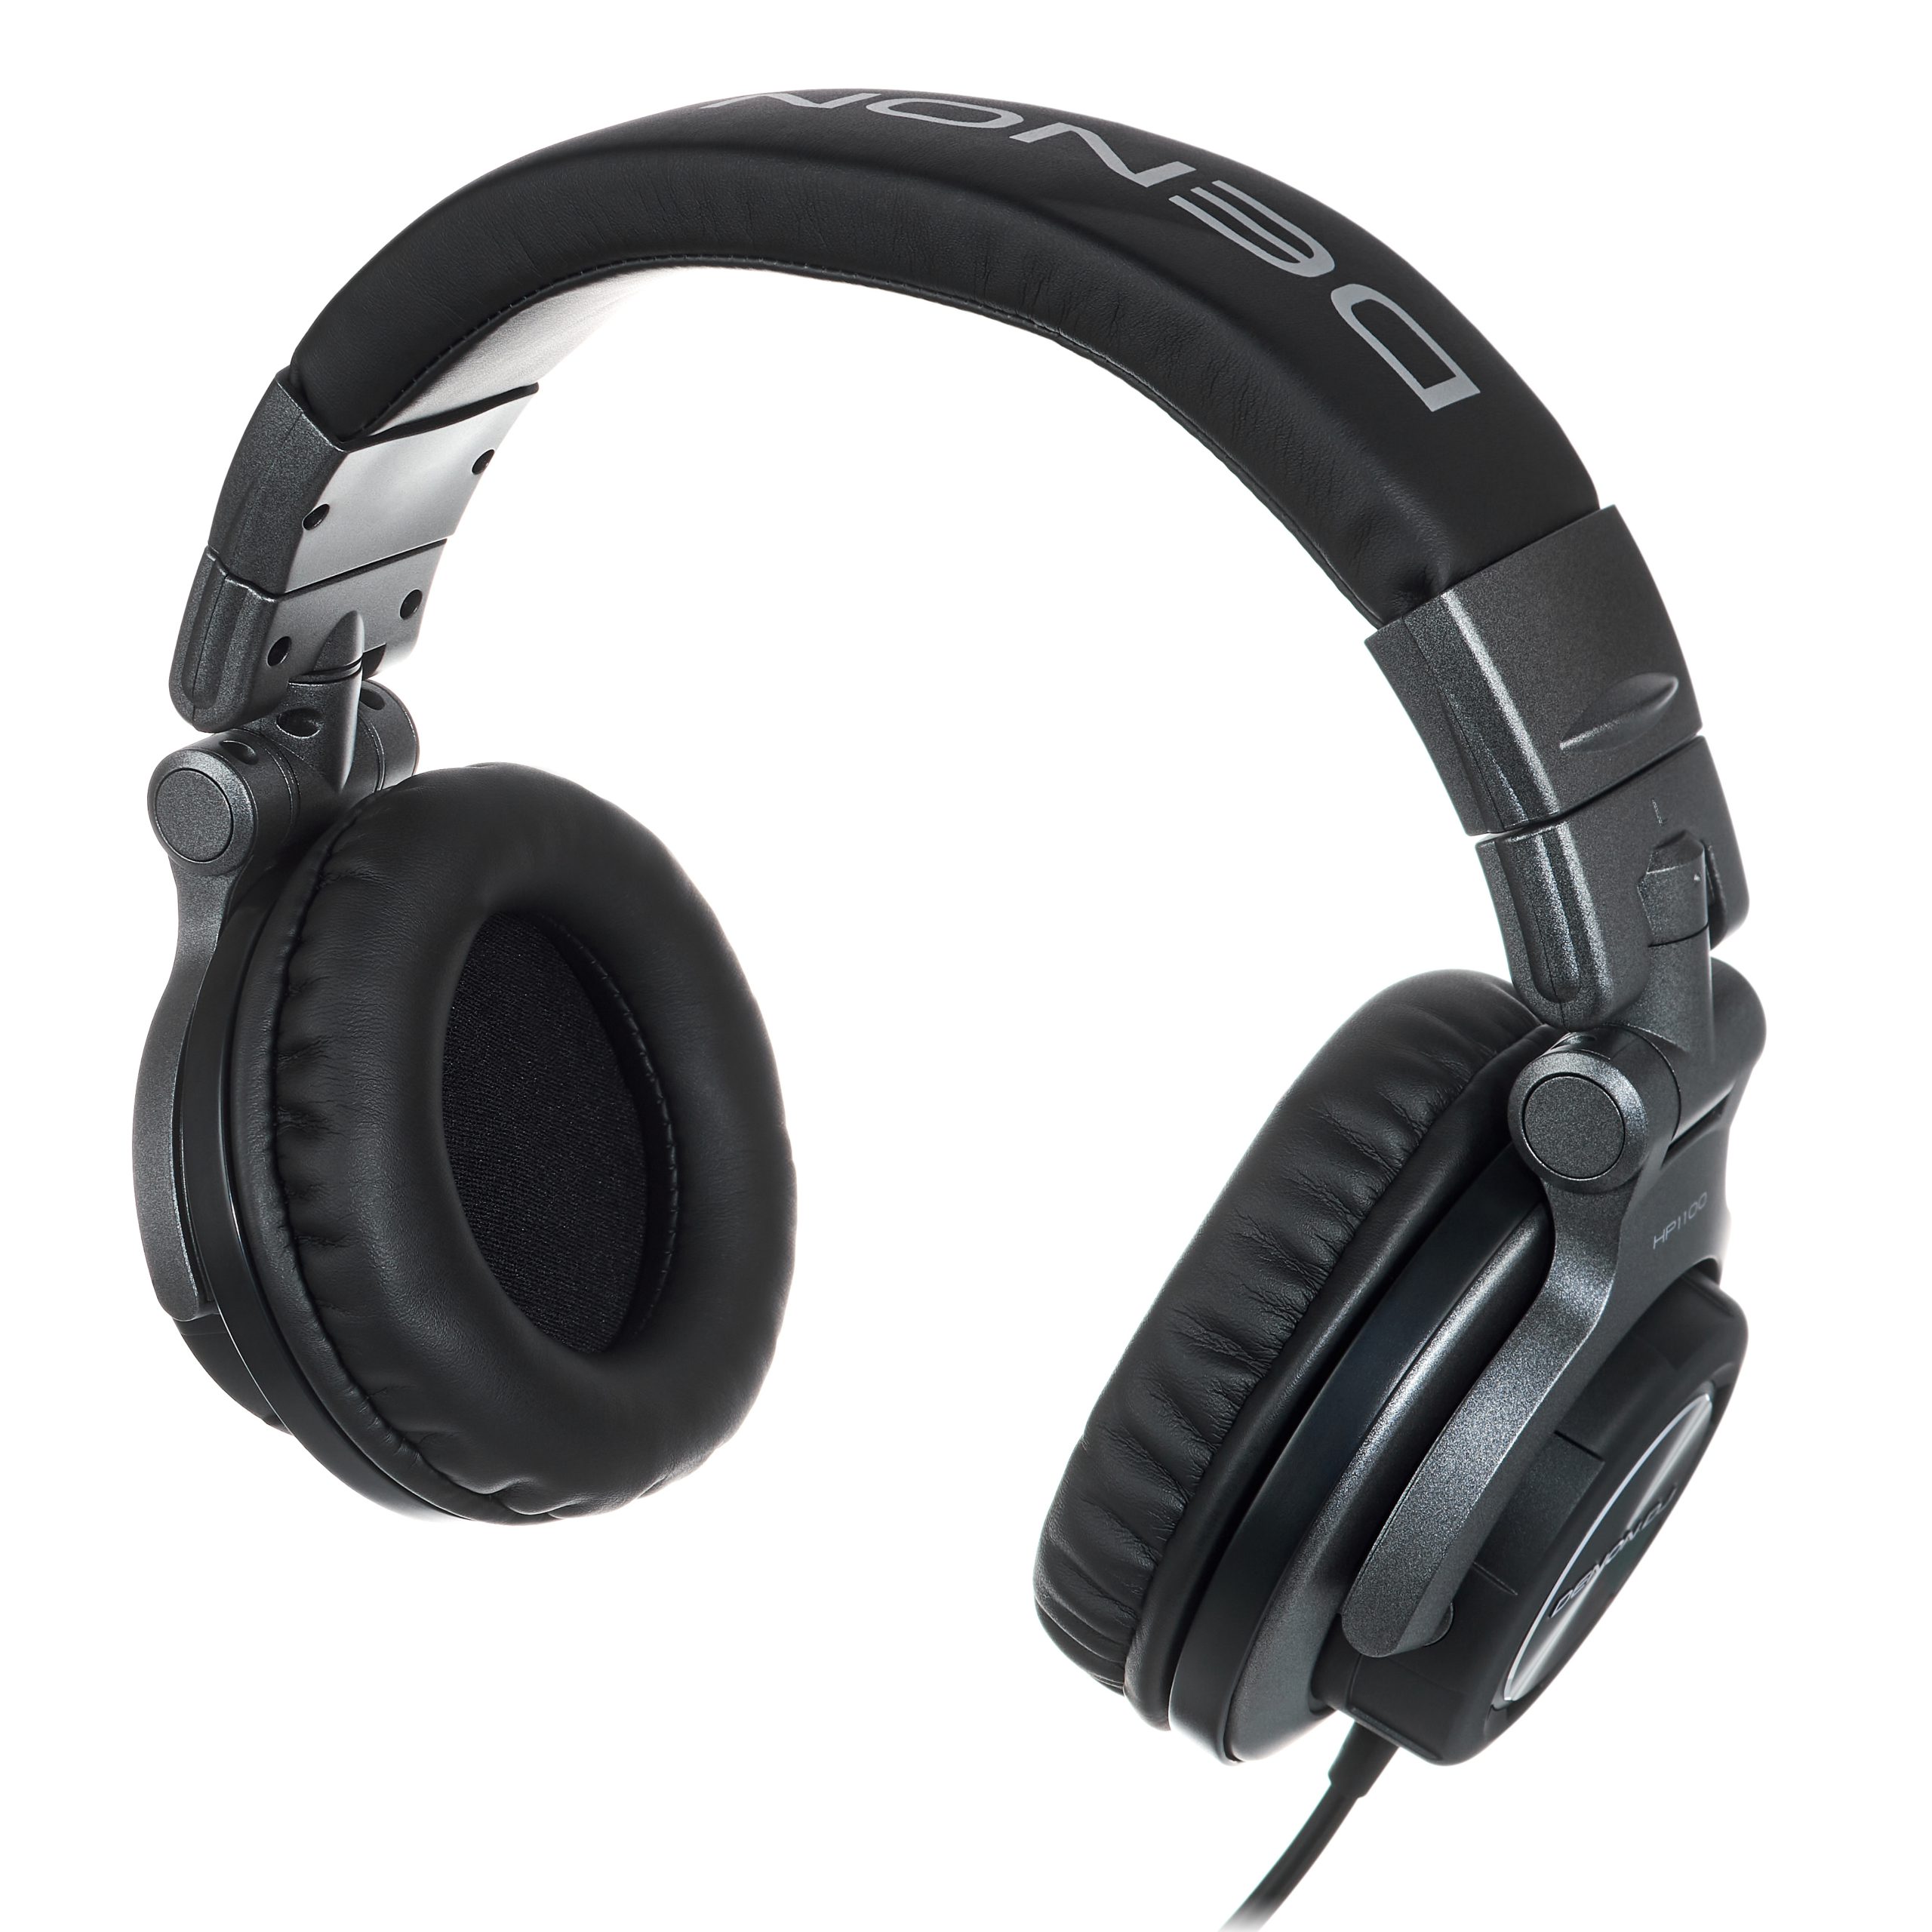 Los Denon DJ HP1100 son uno de los mejores auriculares DJ de 2023